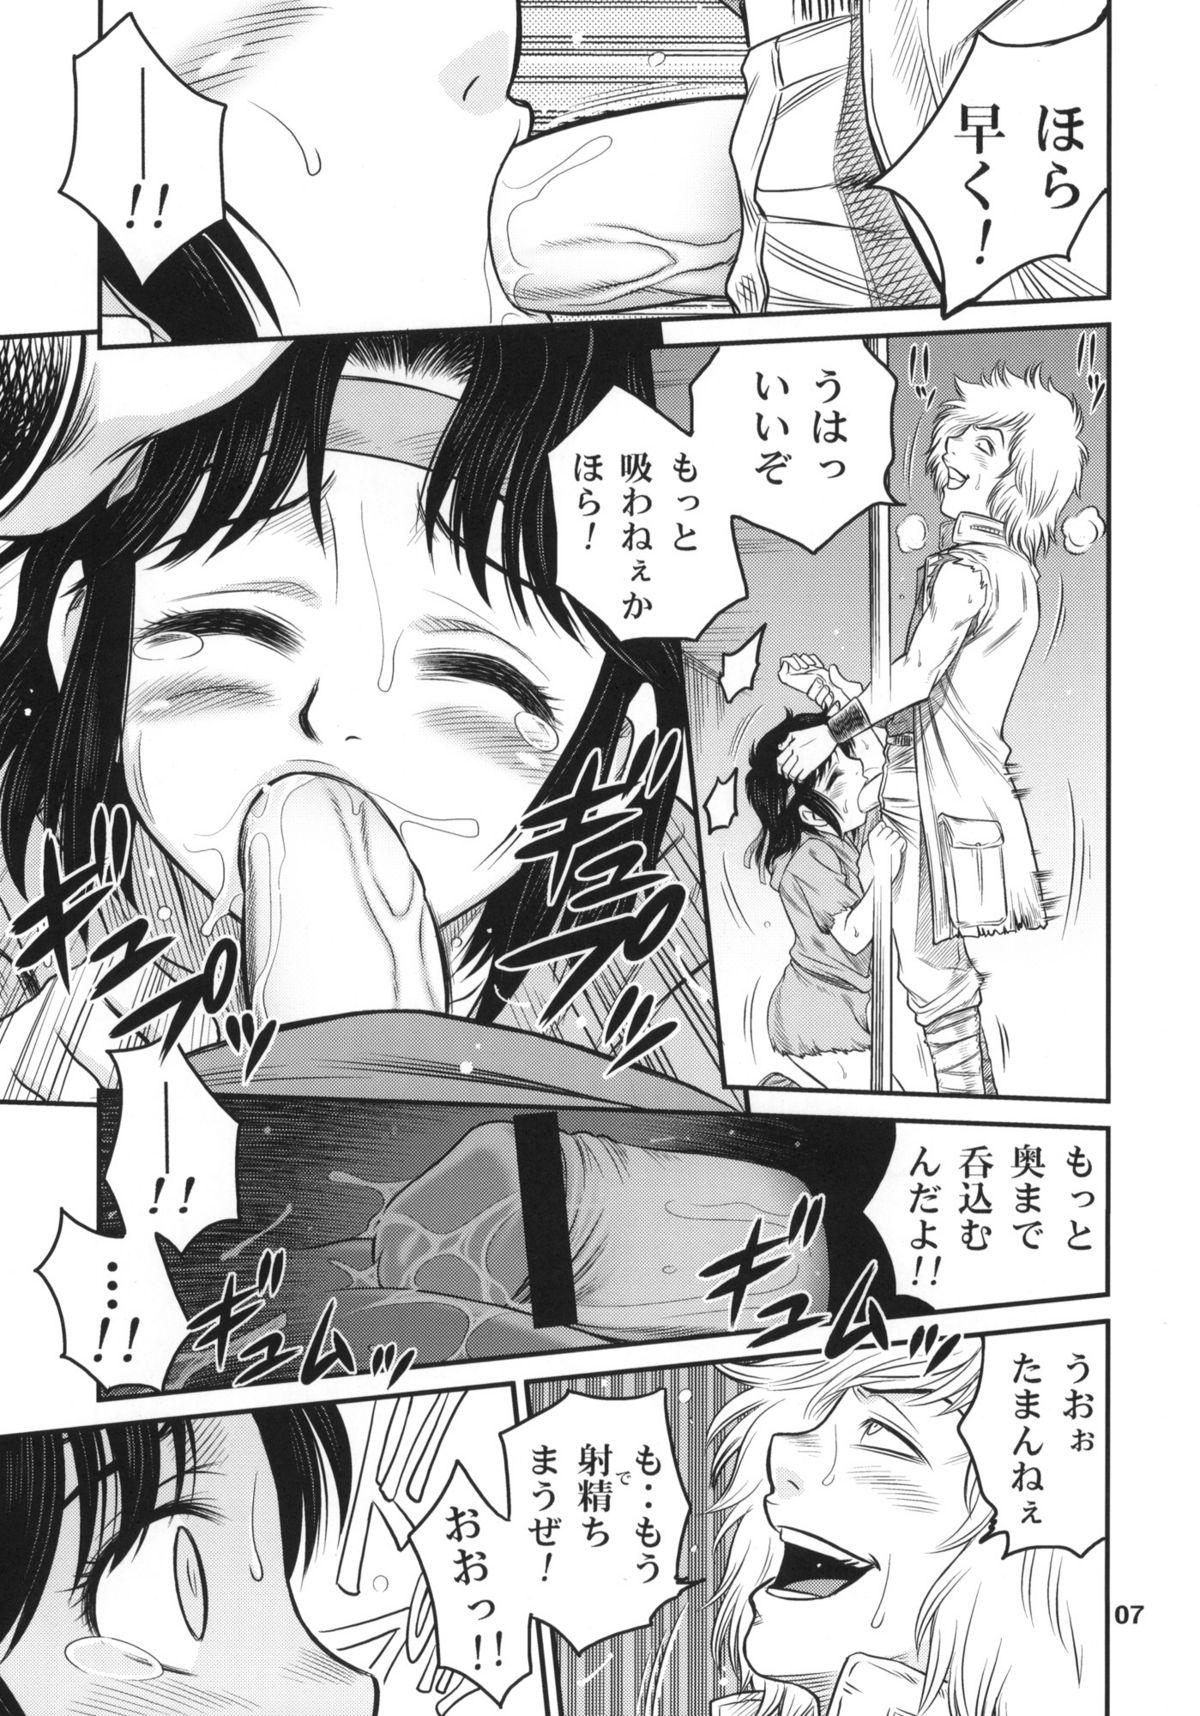 Sexy Girl Sex Seikimatsu Tetsu Kamen Densetsu - Fist of the north star Com - Page 6